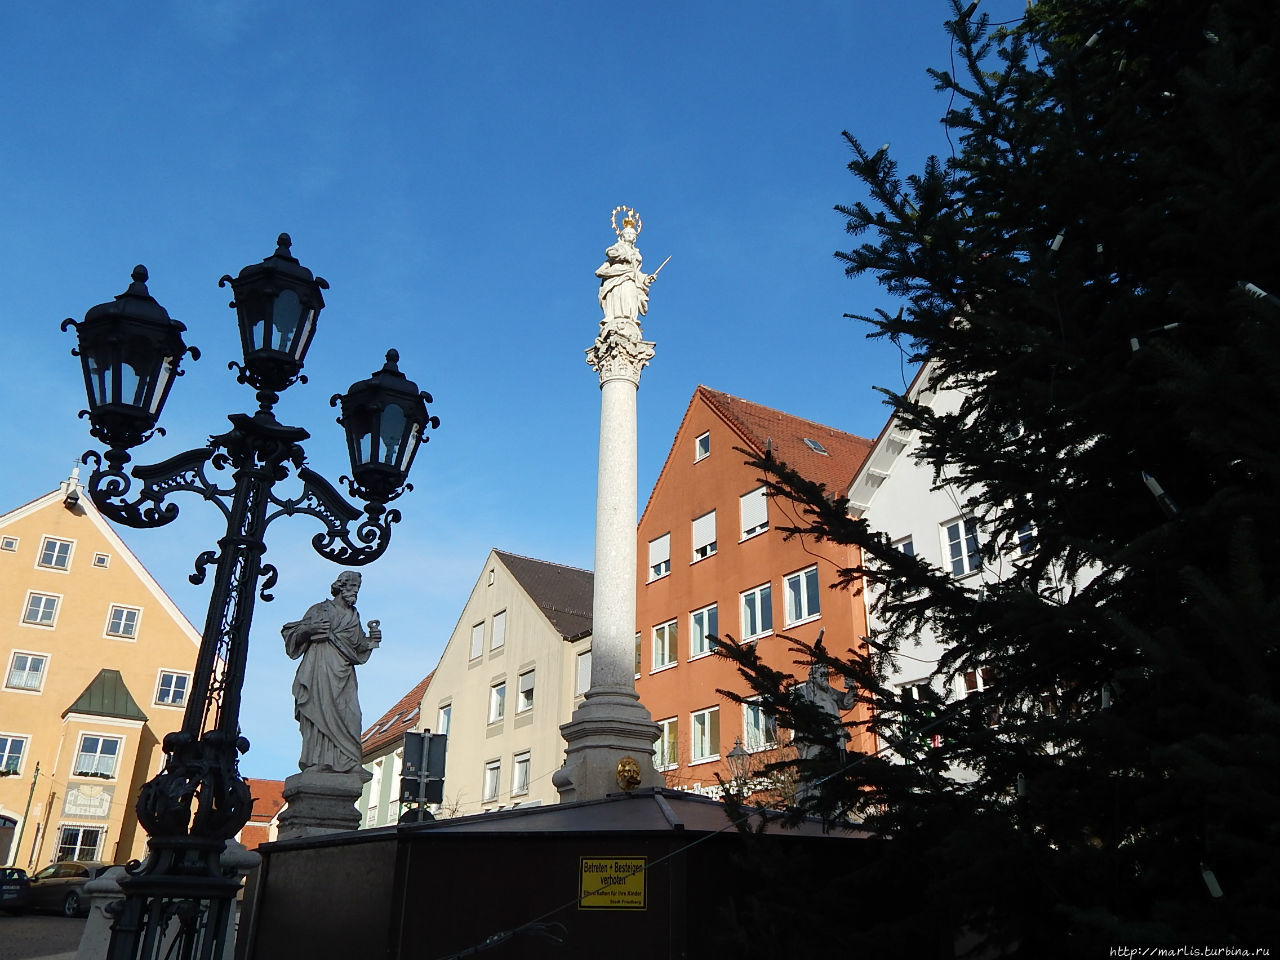 Центральная площадь — Мариенплатц и колонна девы Марии Фридберг, Германия